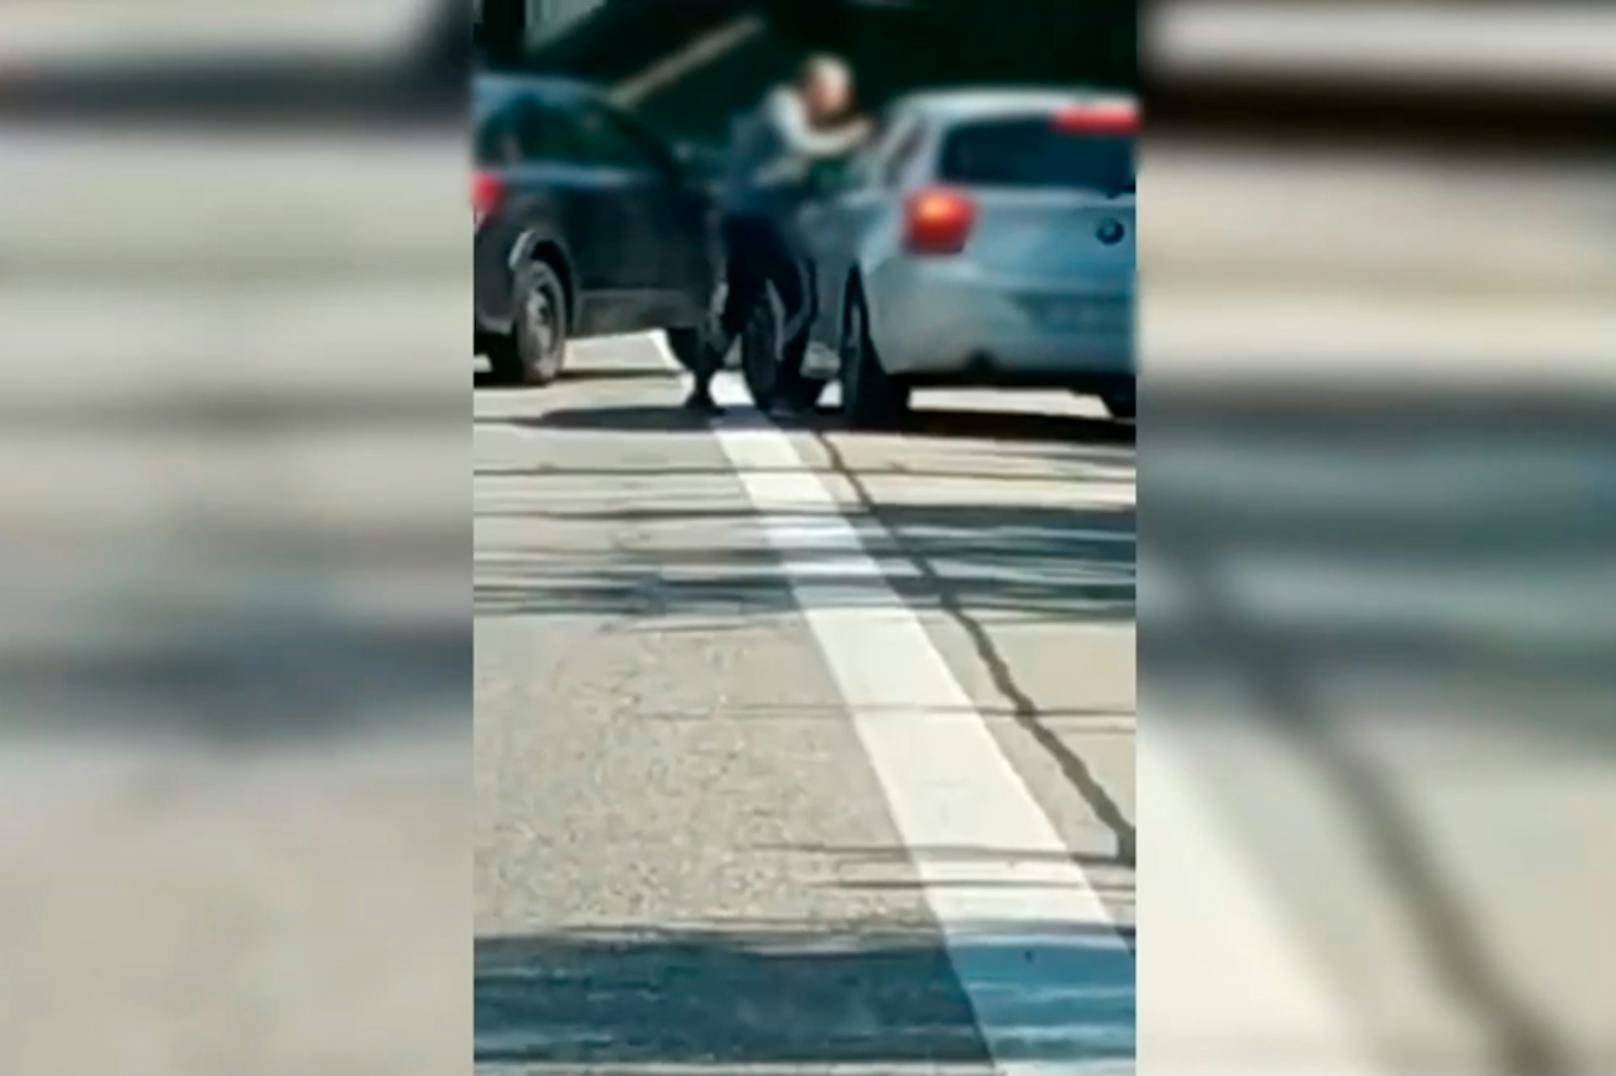 Wut-Lehrer prügelt auf Autobahn los – Video geht viral